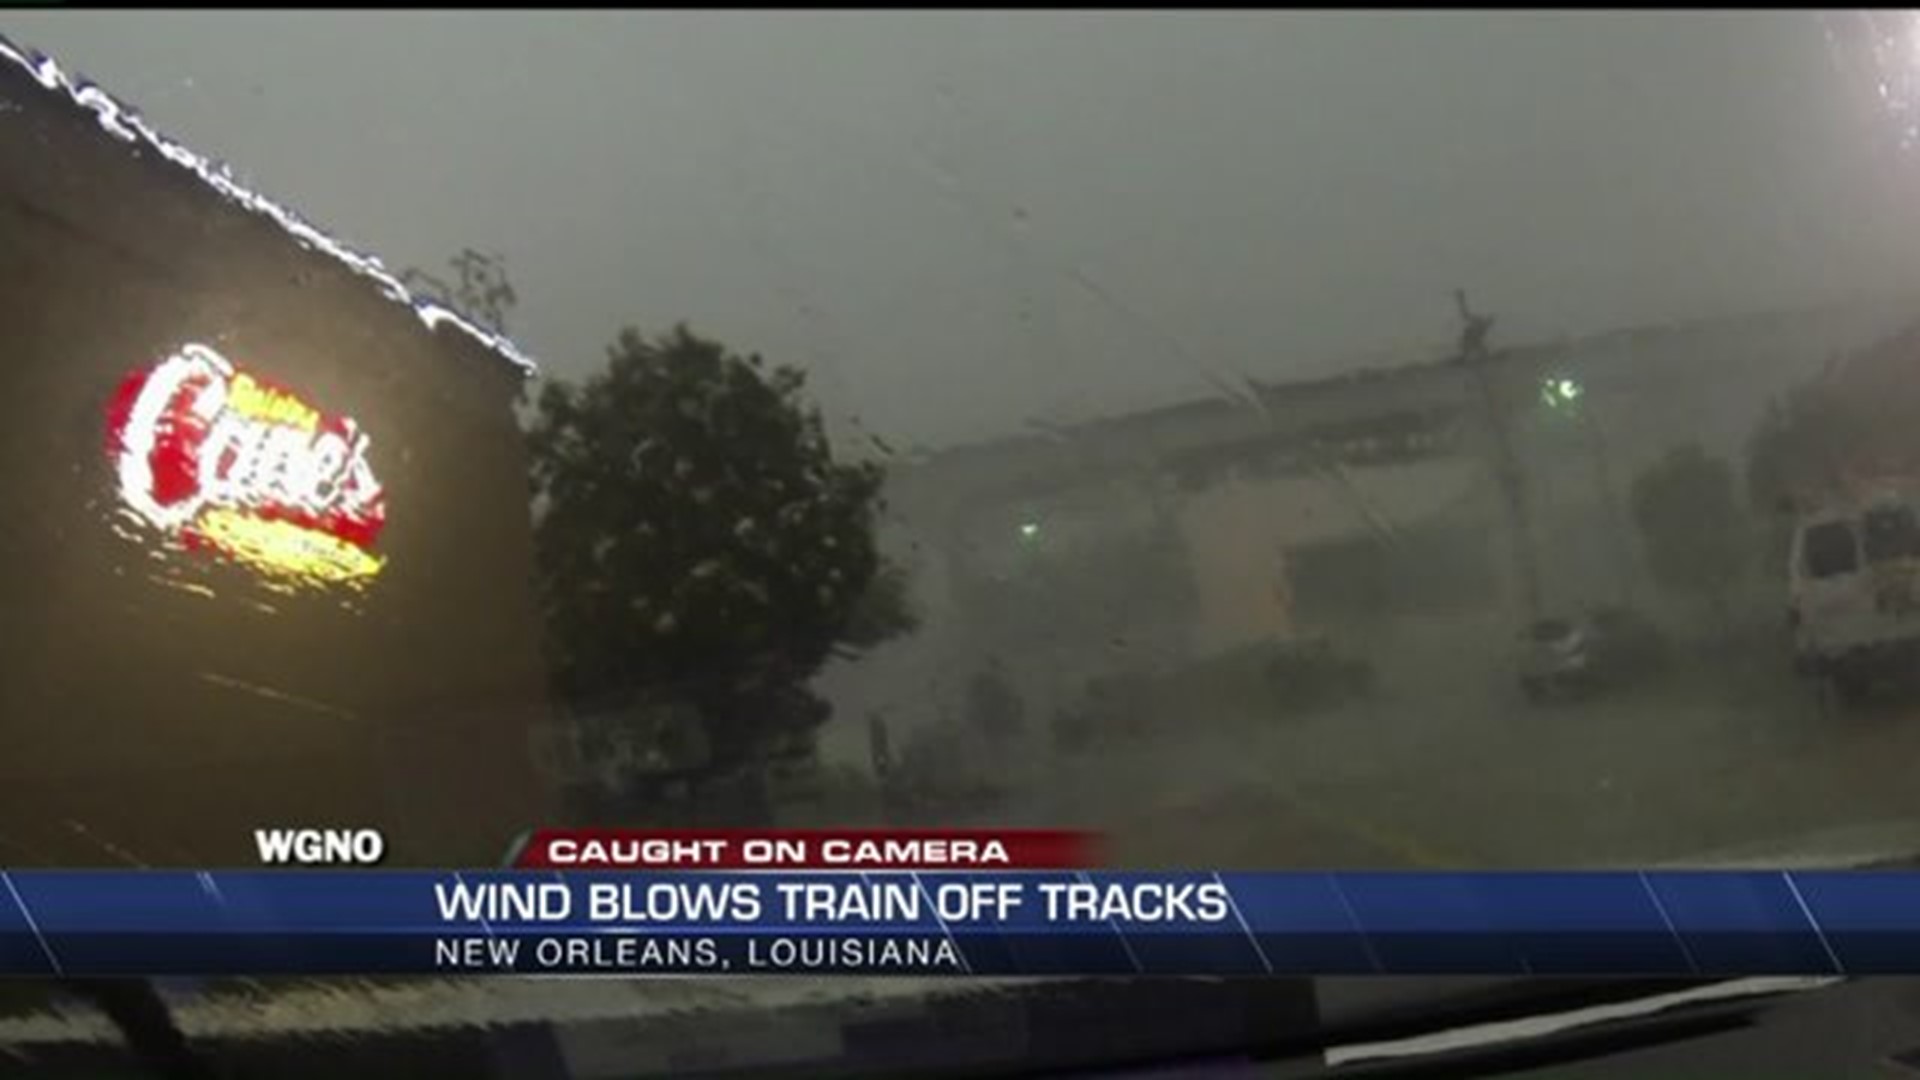 Wind blows train off tracks